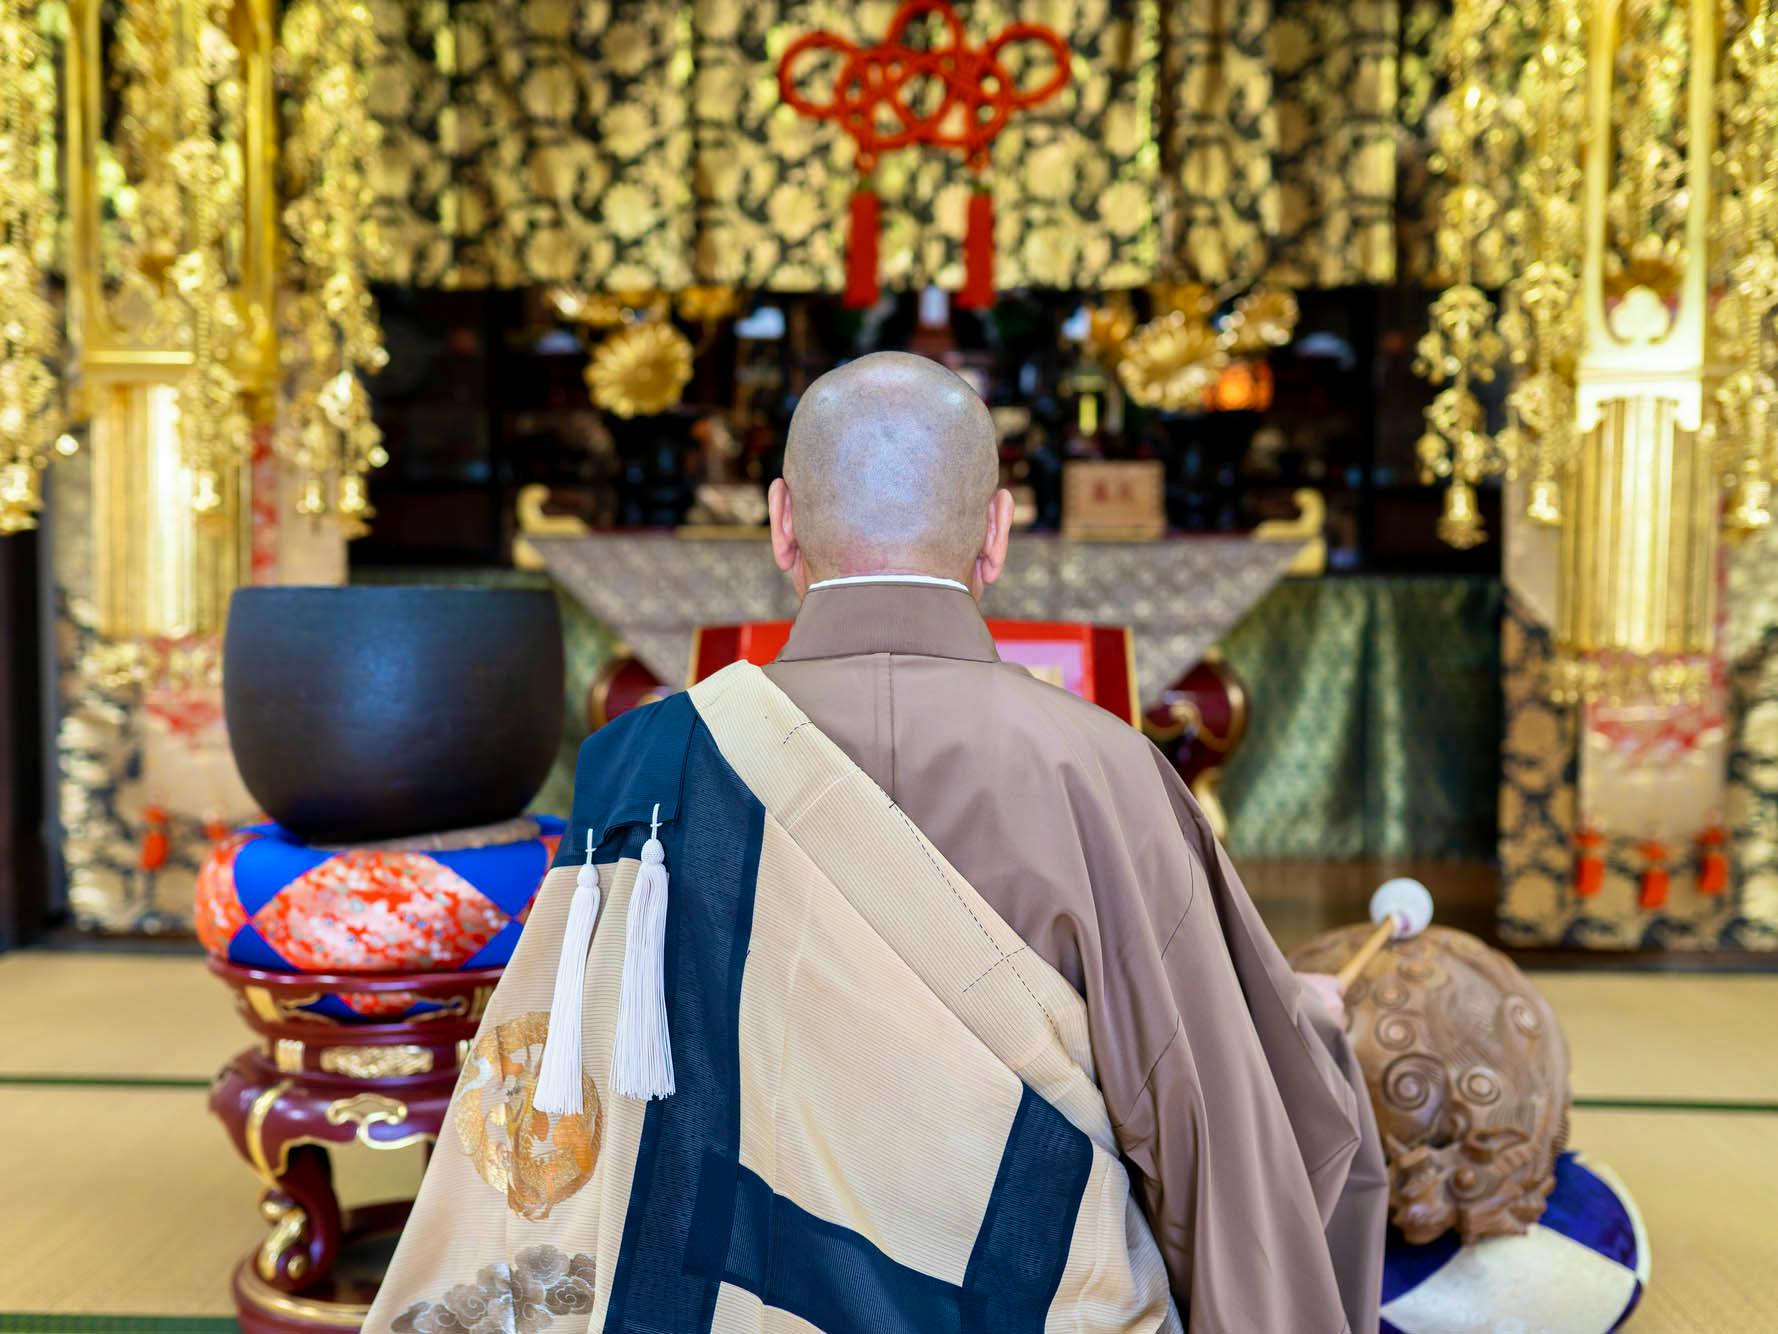 寺院葬のイメージカット。僧侶が読経を読む